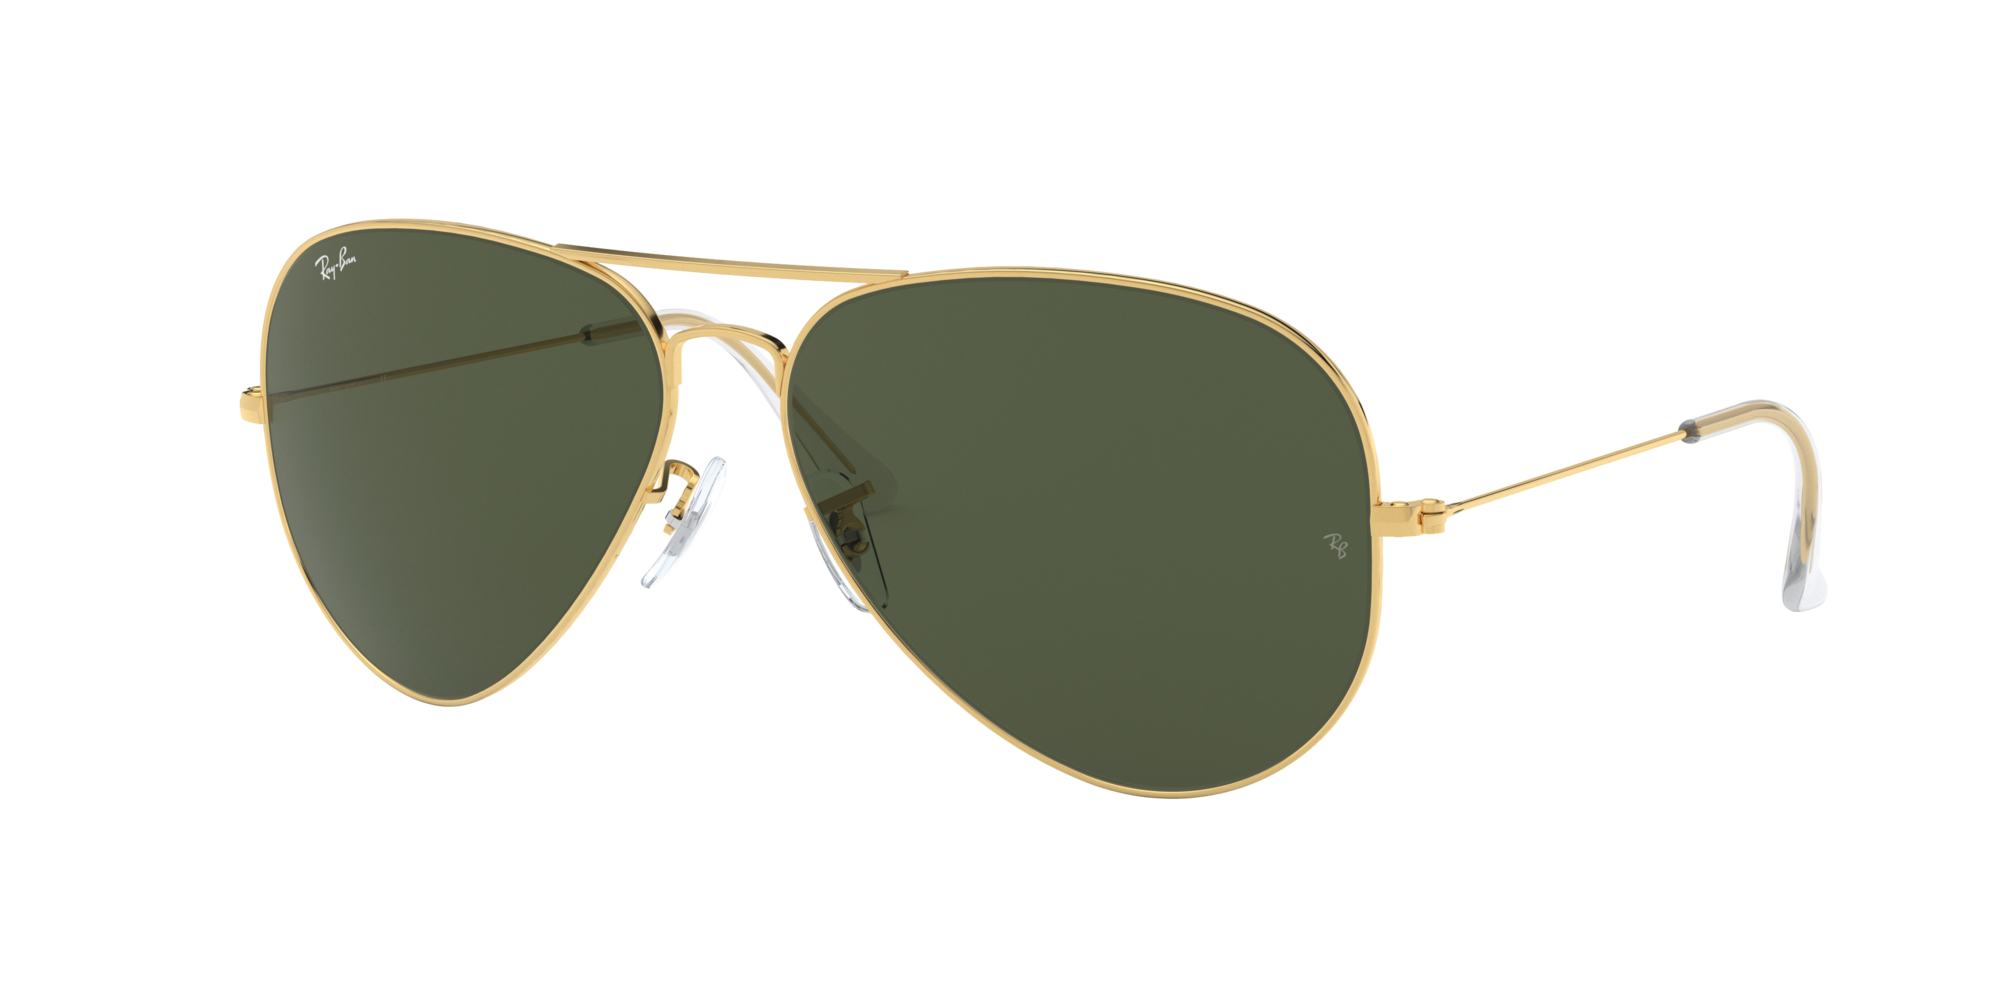 sunglasses similar to ray ban